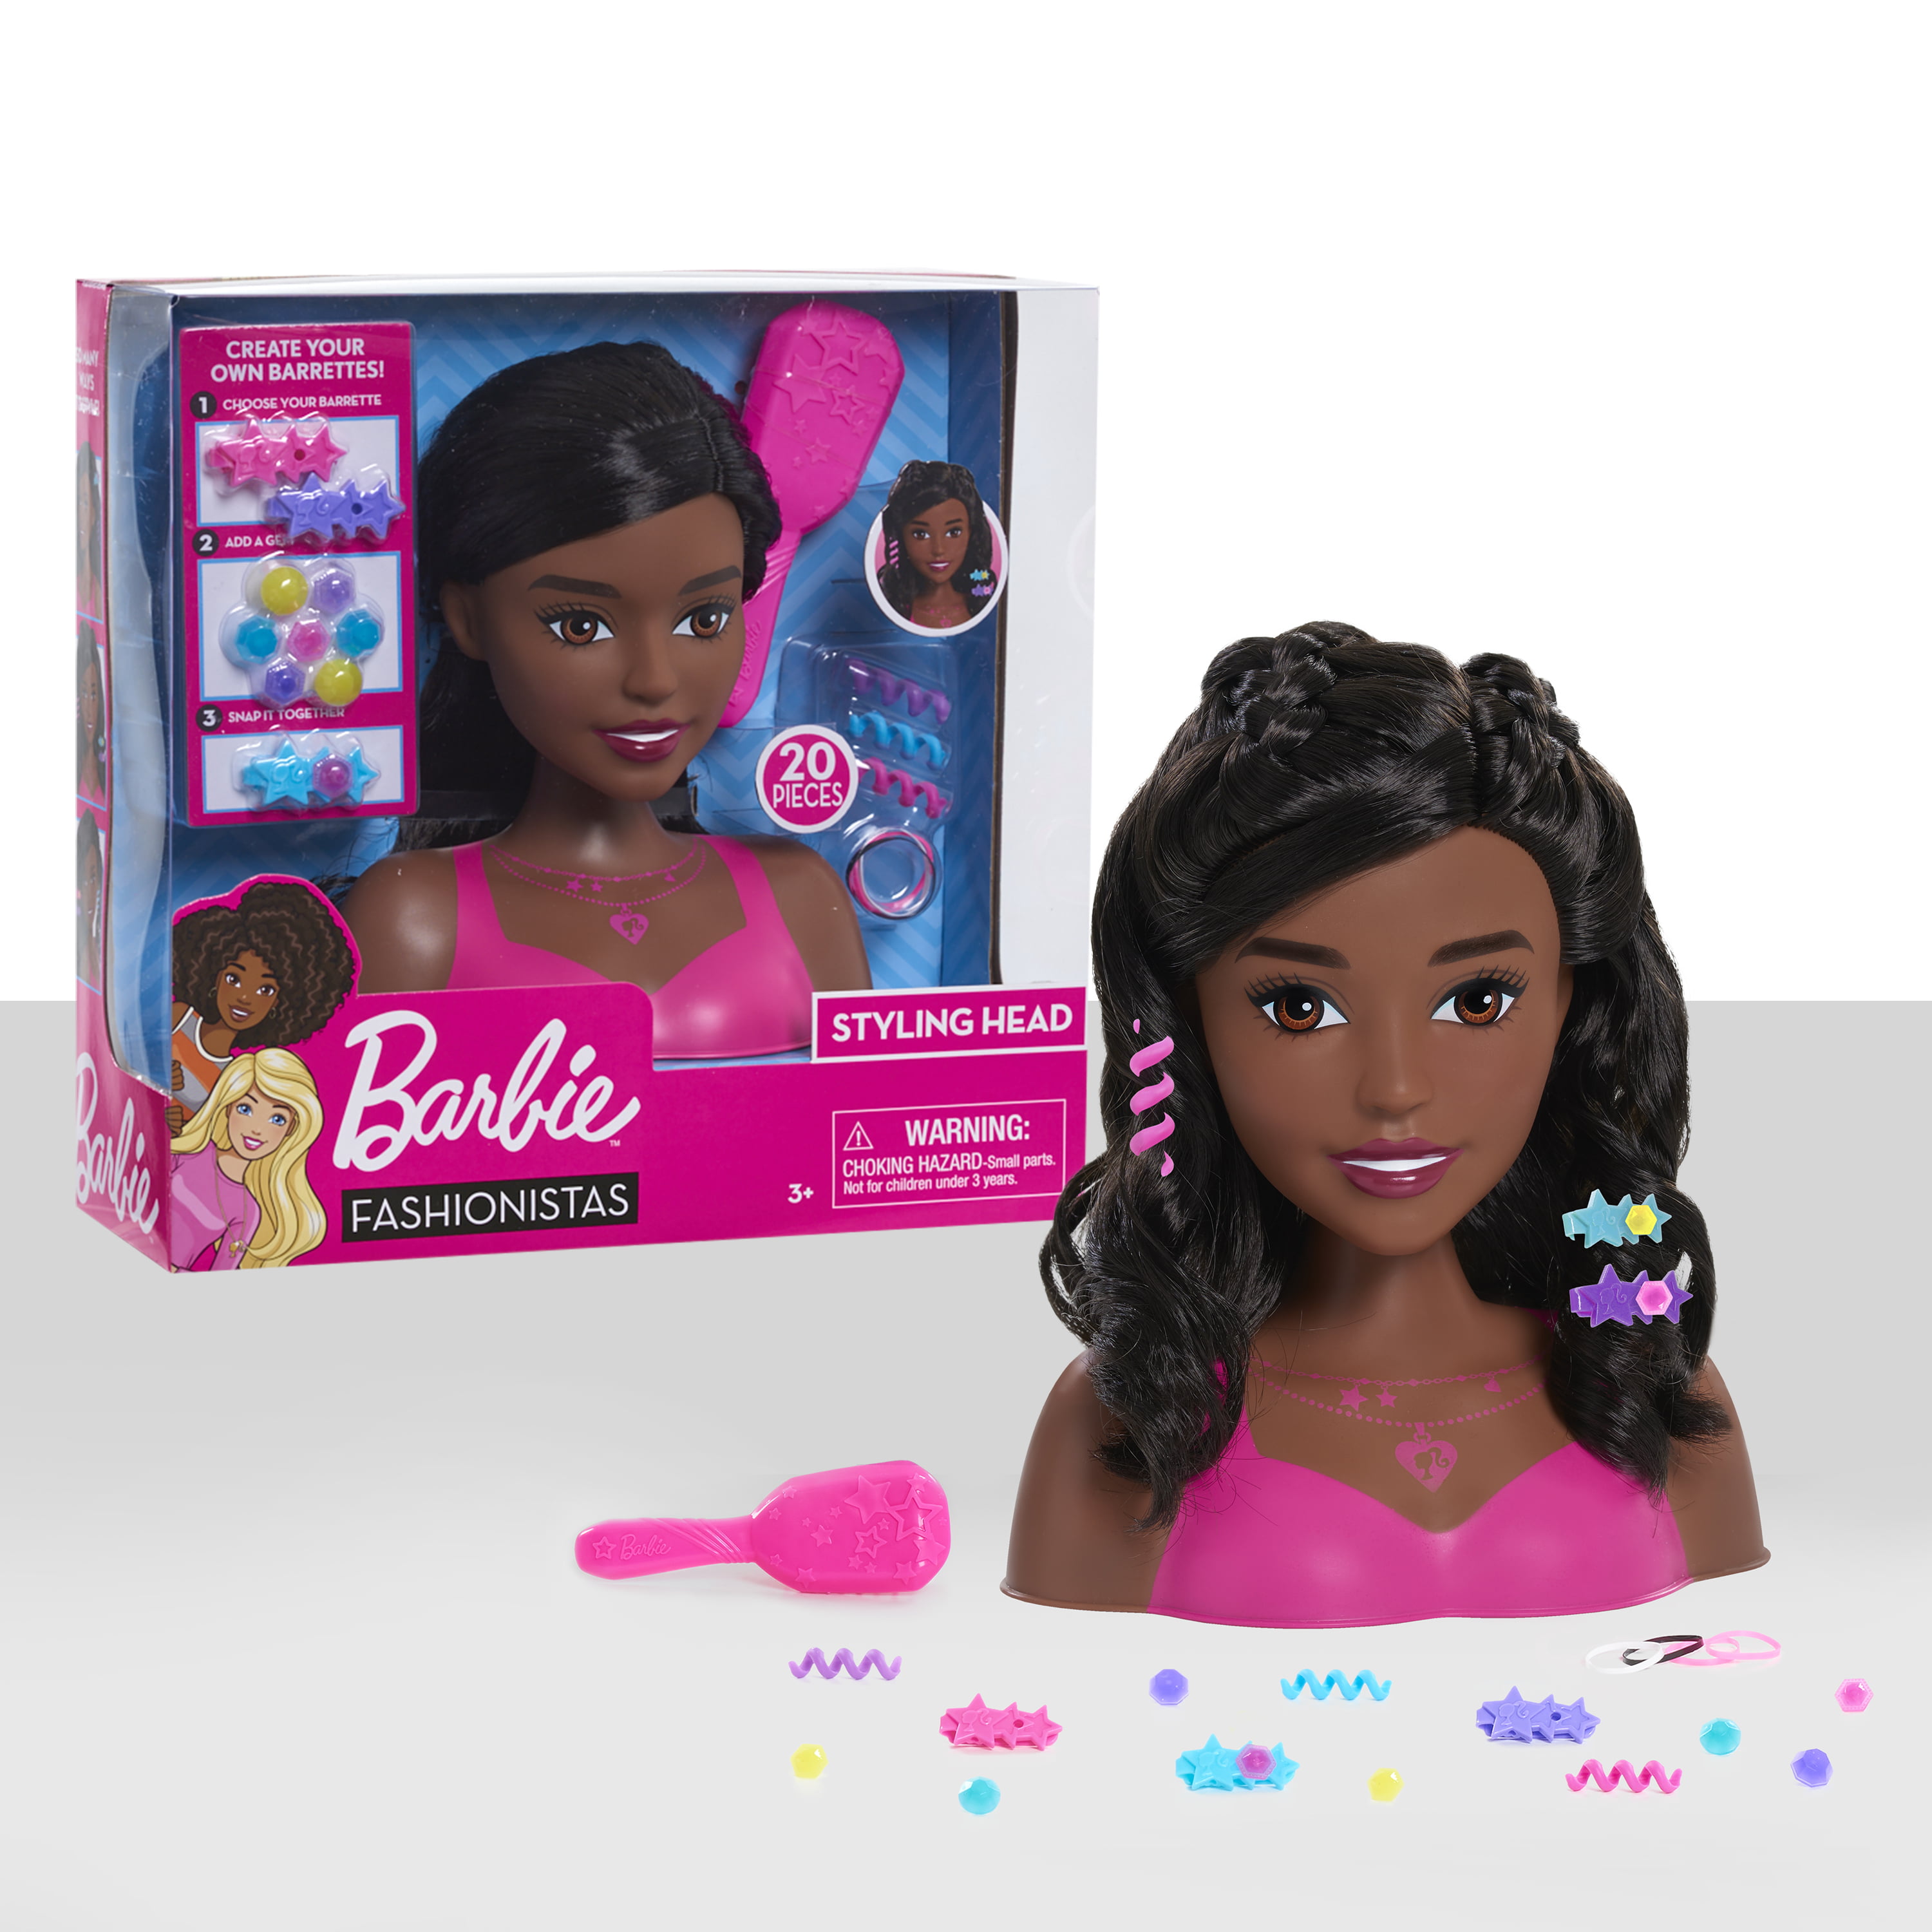 Barbie Fashionistas Styling Head Black Hair Doll 886144625374 Ebay